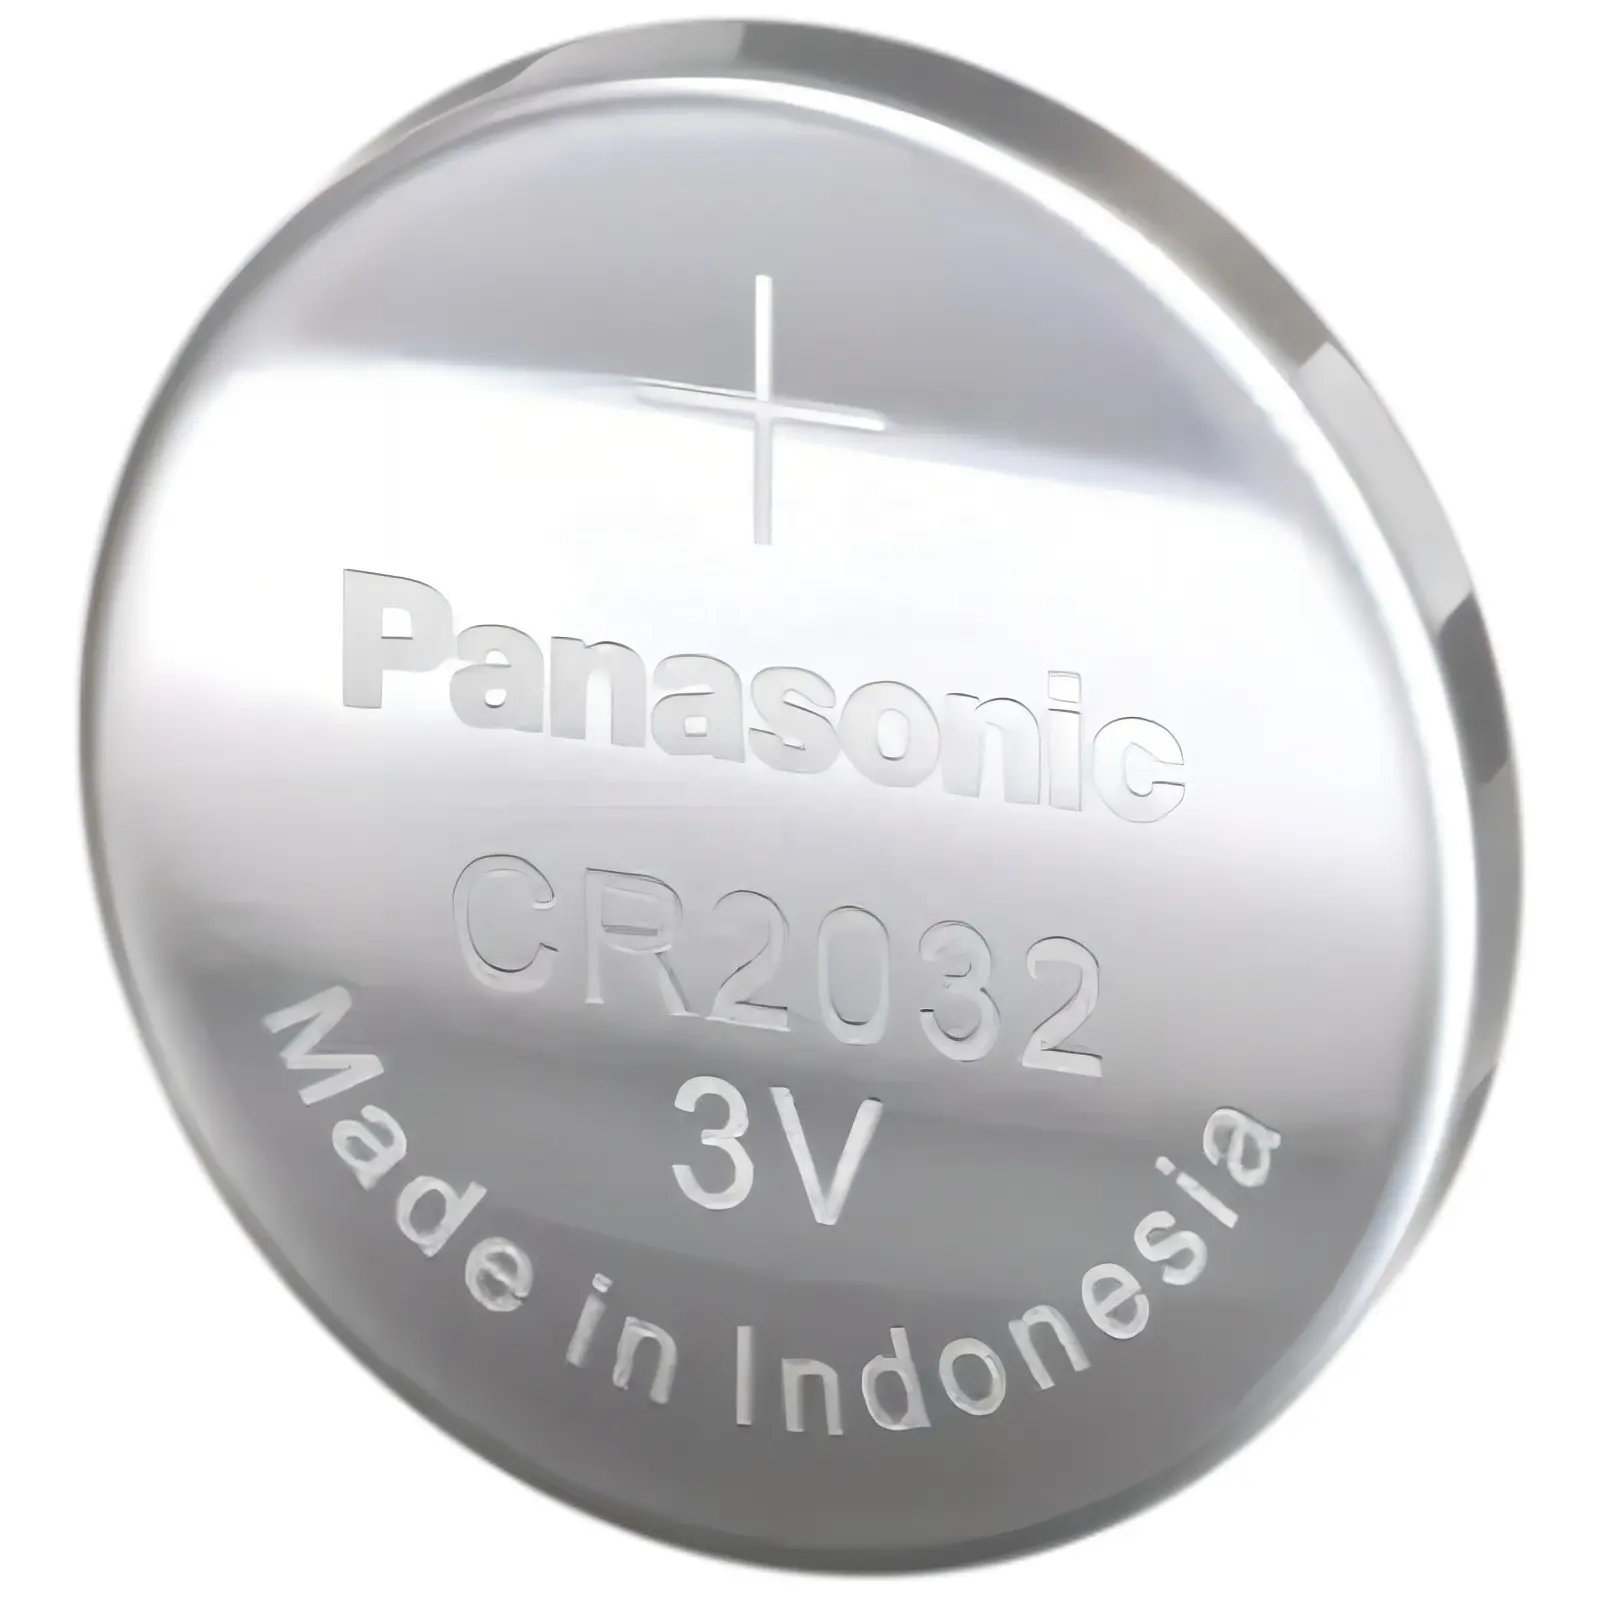 Pansonic CR2032 3V 225mAh batterie a bottone per la batteria del telecomando della chiave dell'auto